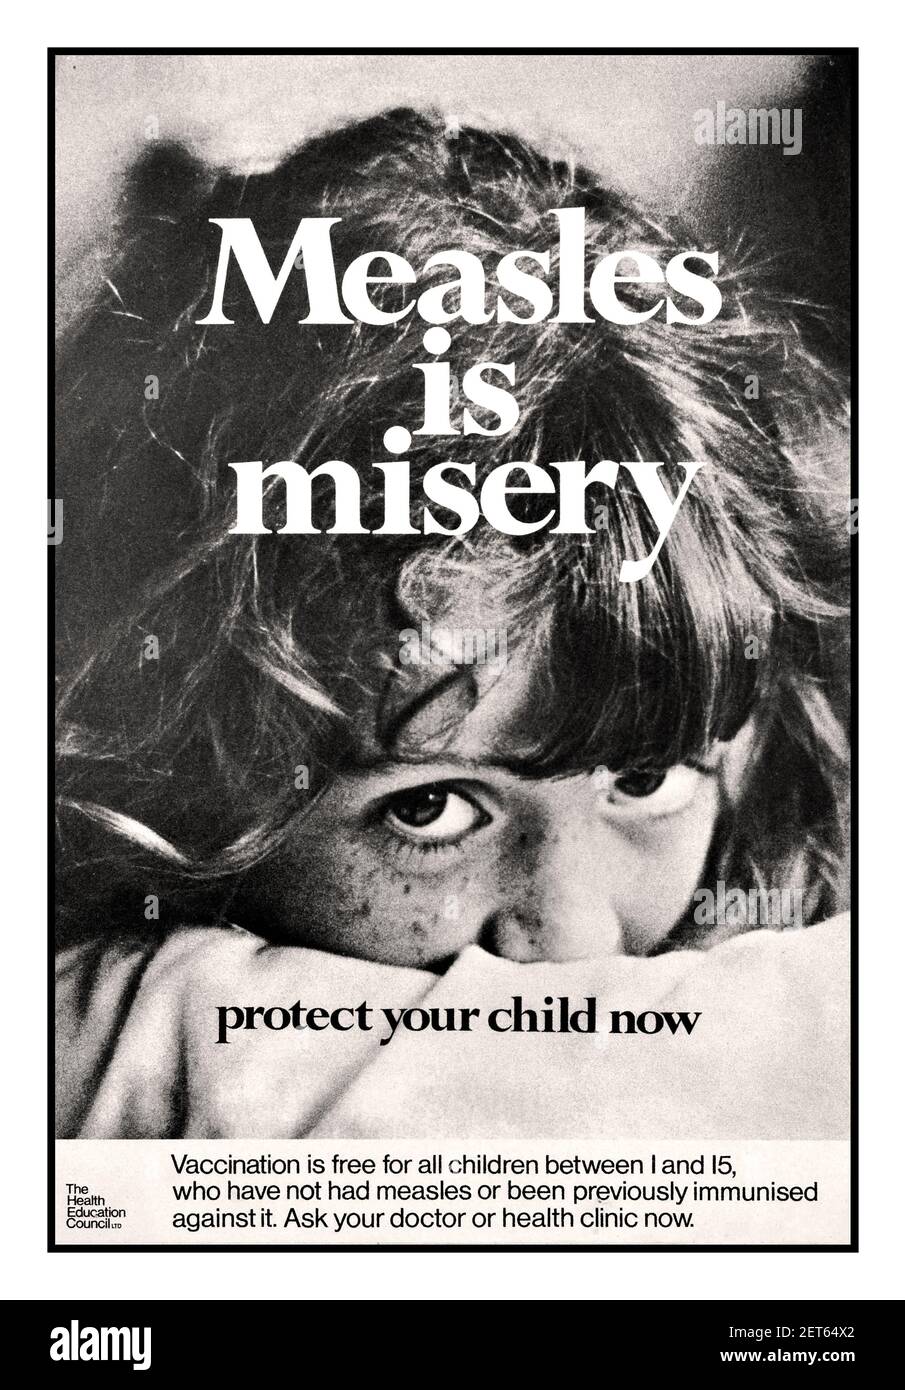 Vintage 1970 'measels is mish - Protect Your Child Now' publié par le British Health Education Council - jeune enfant qui cherche 'la vaccination est gratuite pour tous les enfants de 1 à 15 ans qui n'ont pas eu de mesures ou qui ont déjà été immunisés contre elle. Demandez à votre médecin ou à votre clinique de santé maintenant. Royaume-Uni années 1970 vaccin Jab protection du vaccin Banque D'Images